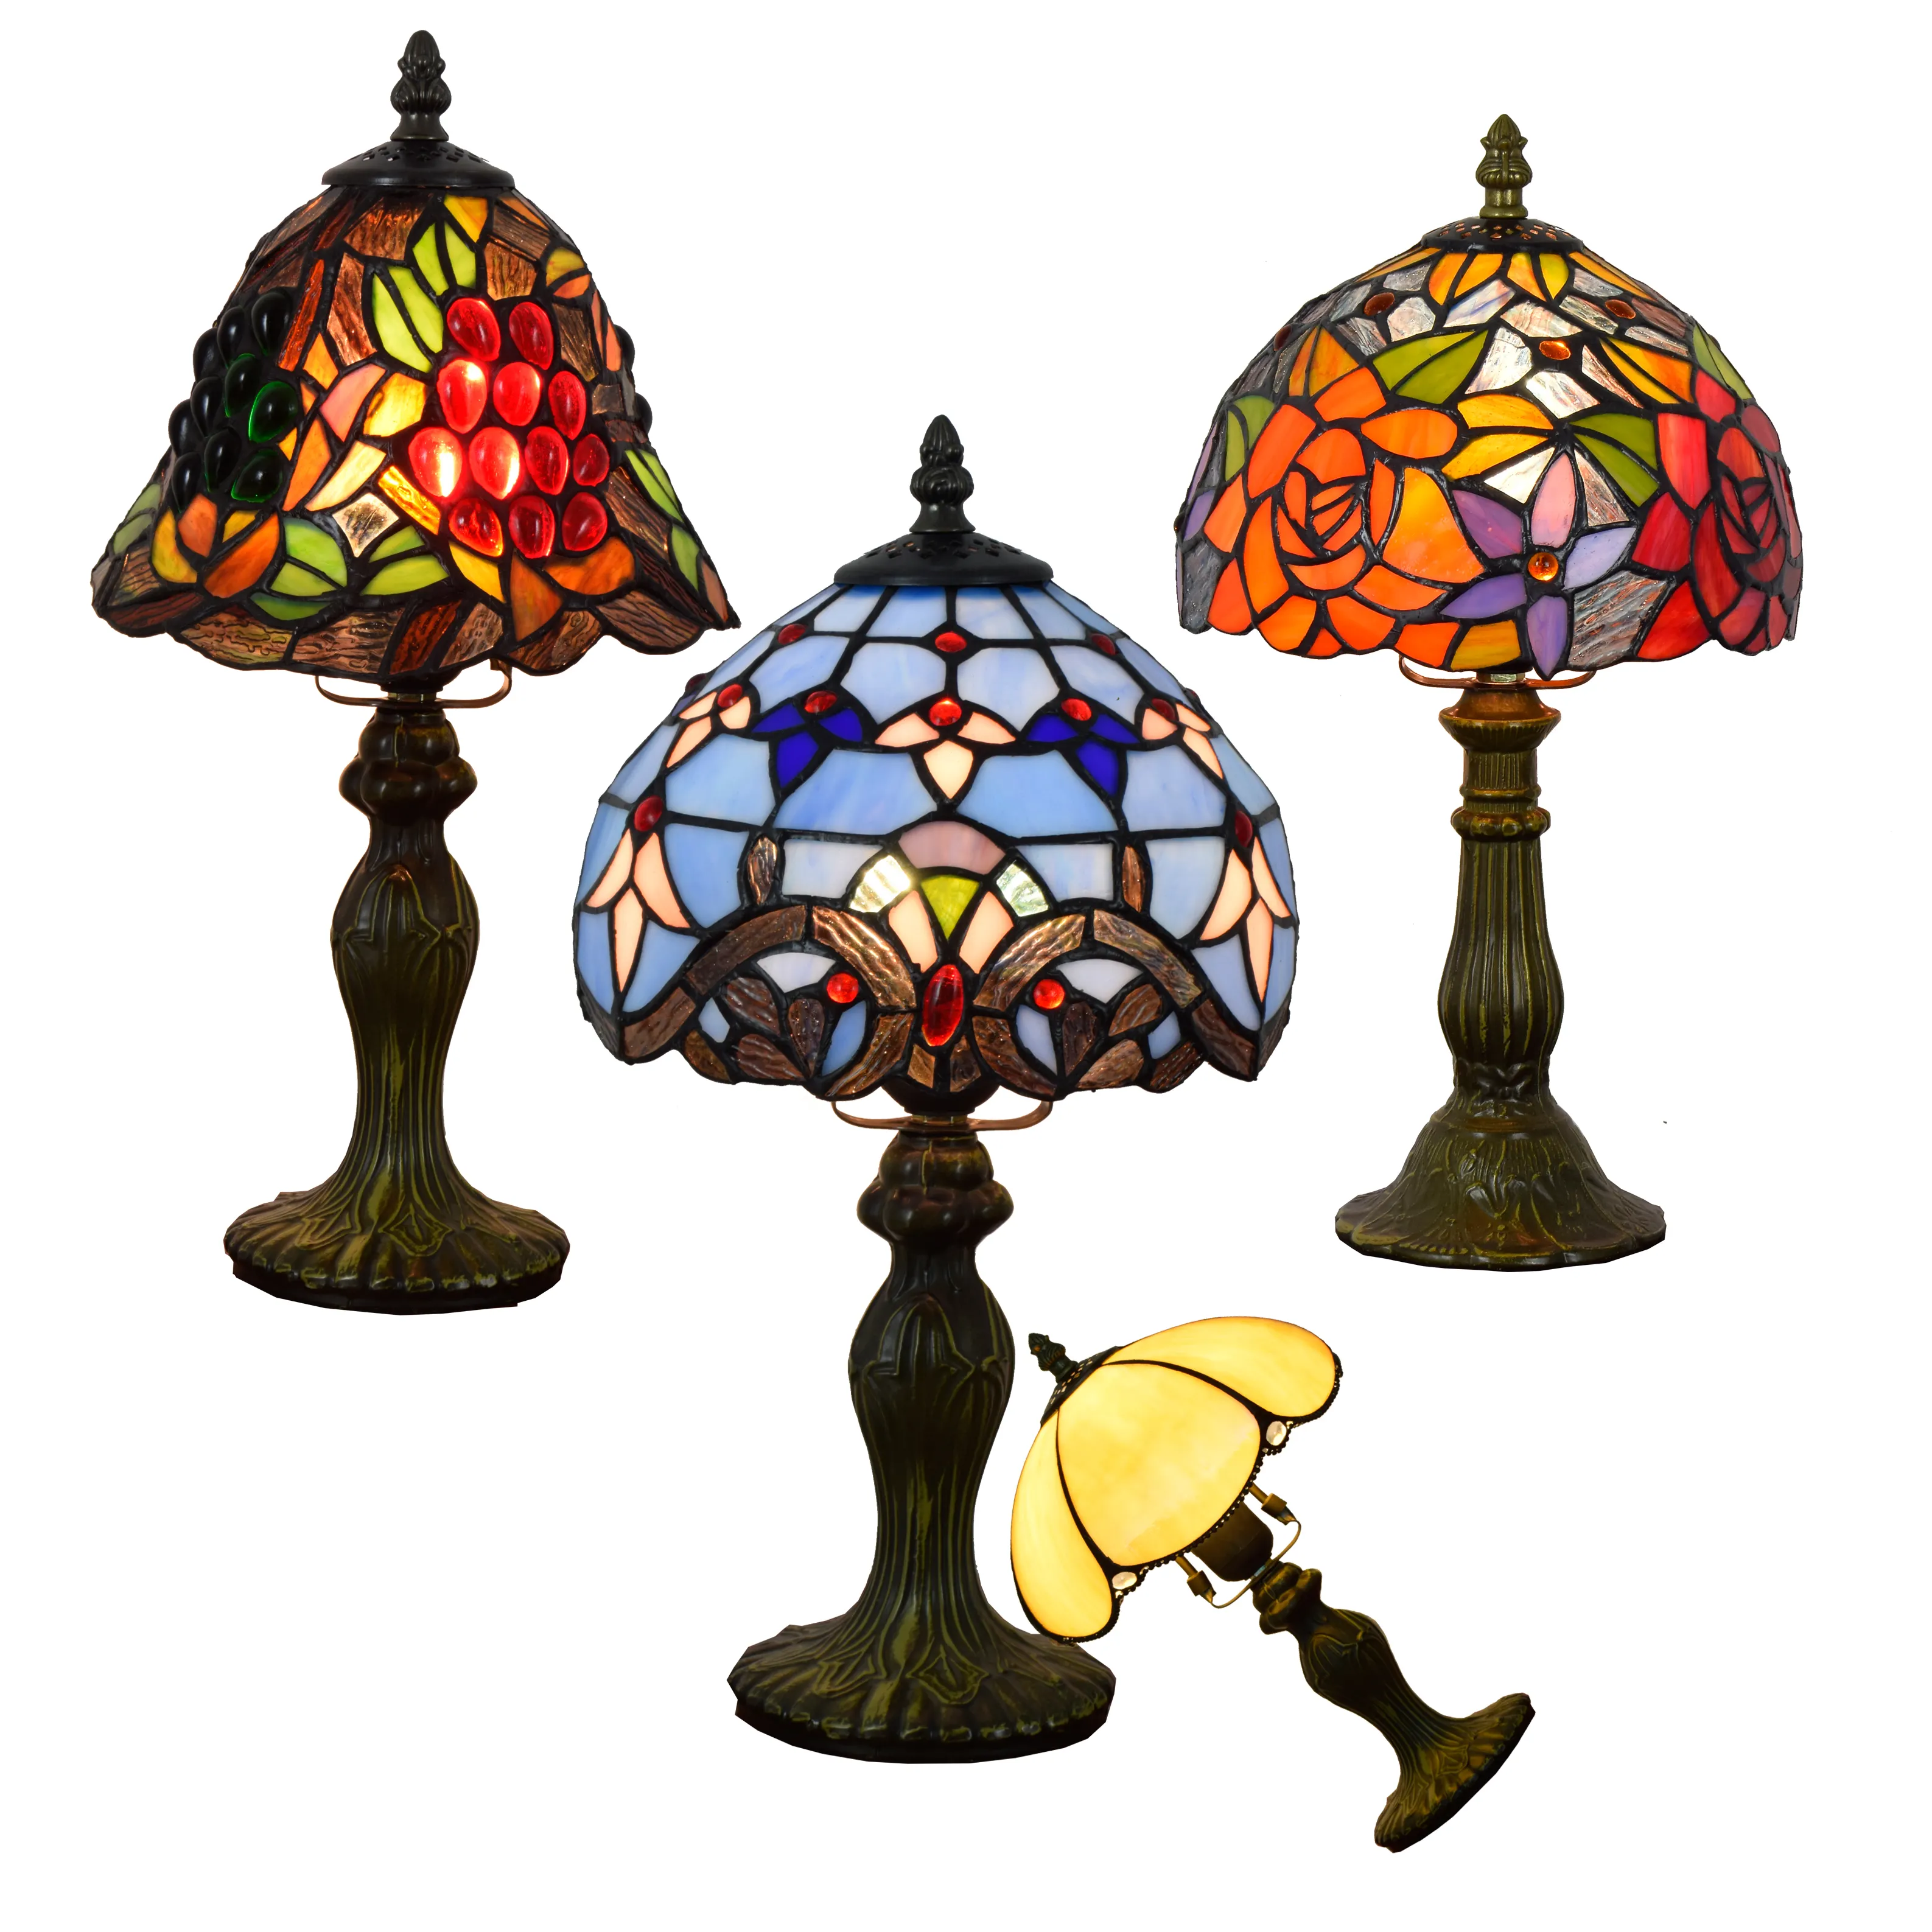 8 Inch Retro Sáng Tạo Màu Glass Lampen Cạnh Giường Ngủ Đèn Bàn Bar Nghiên Cứu Hoa Hồng Baroque Nho Ánh Sáng Ban Đêm Tiffany Bảng Đèn